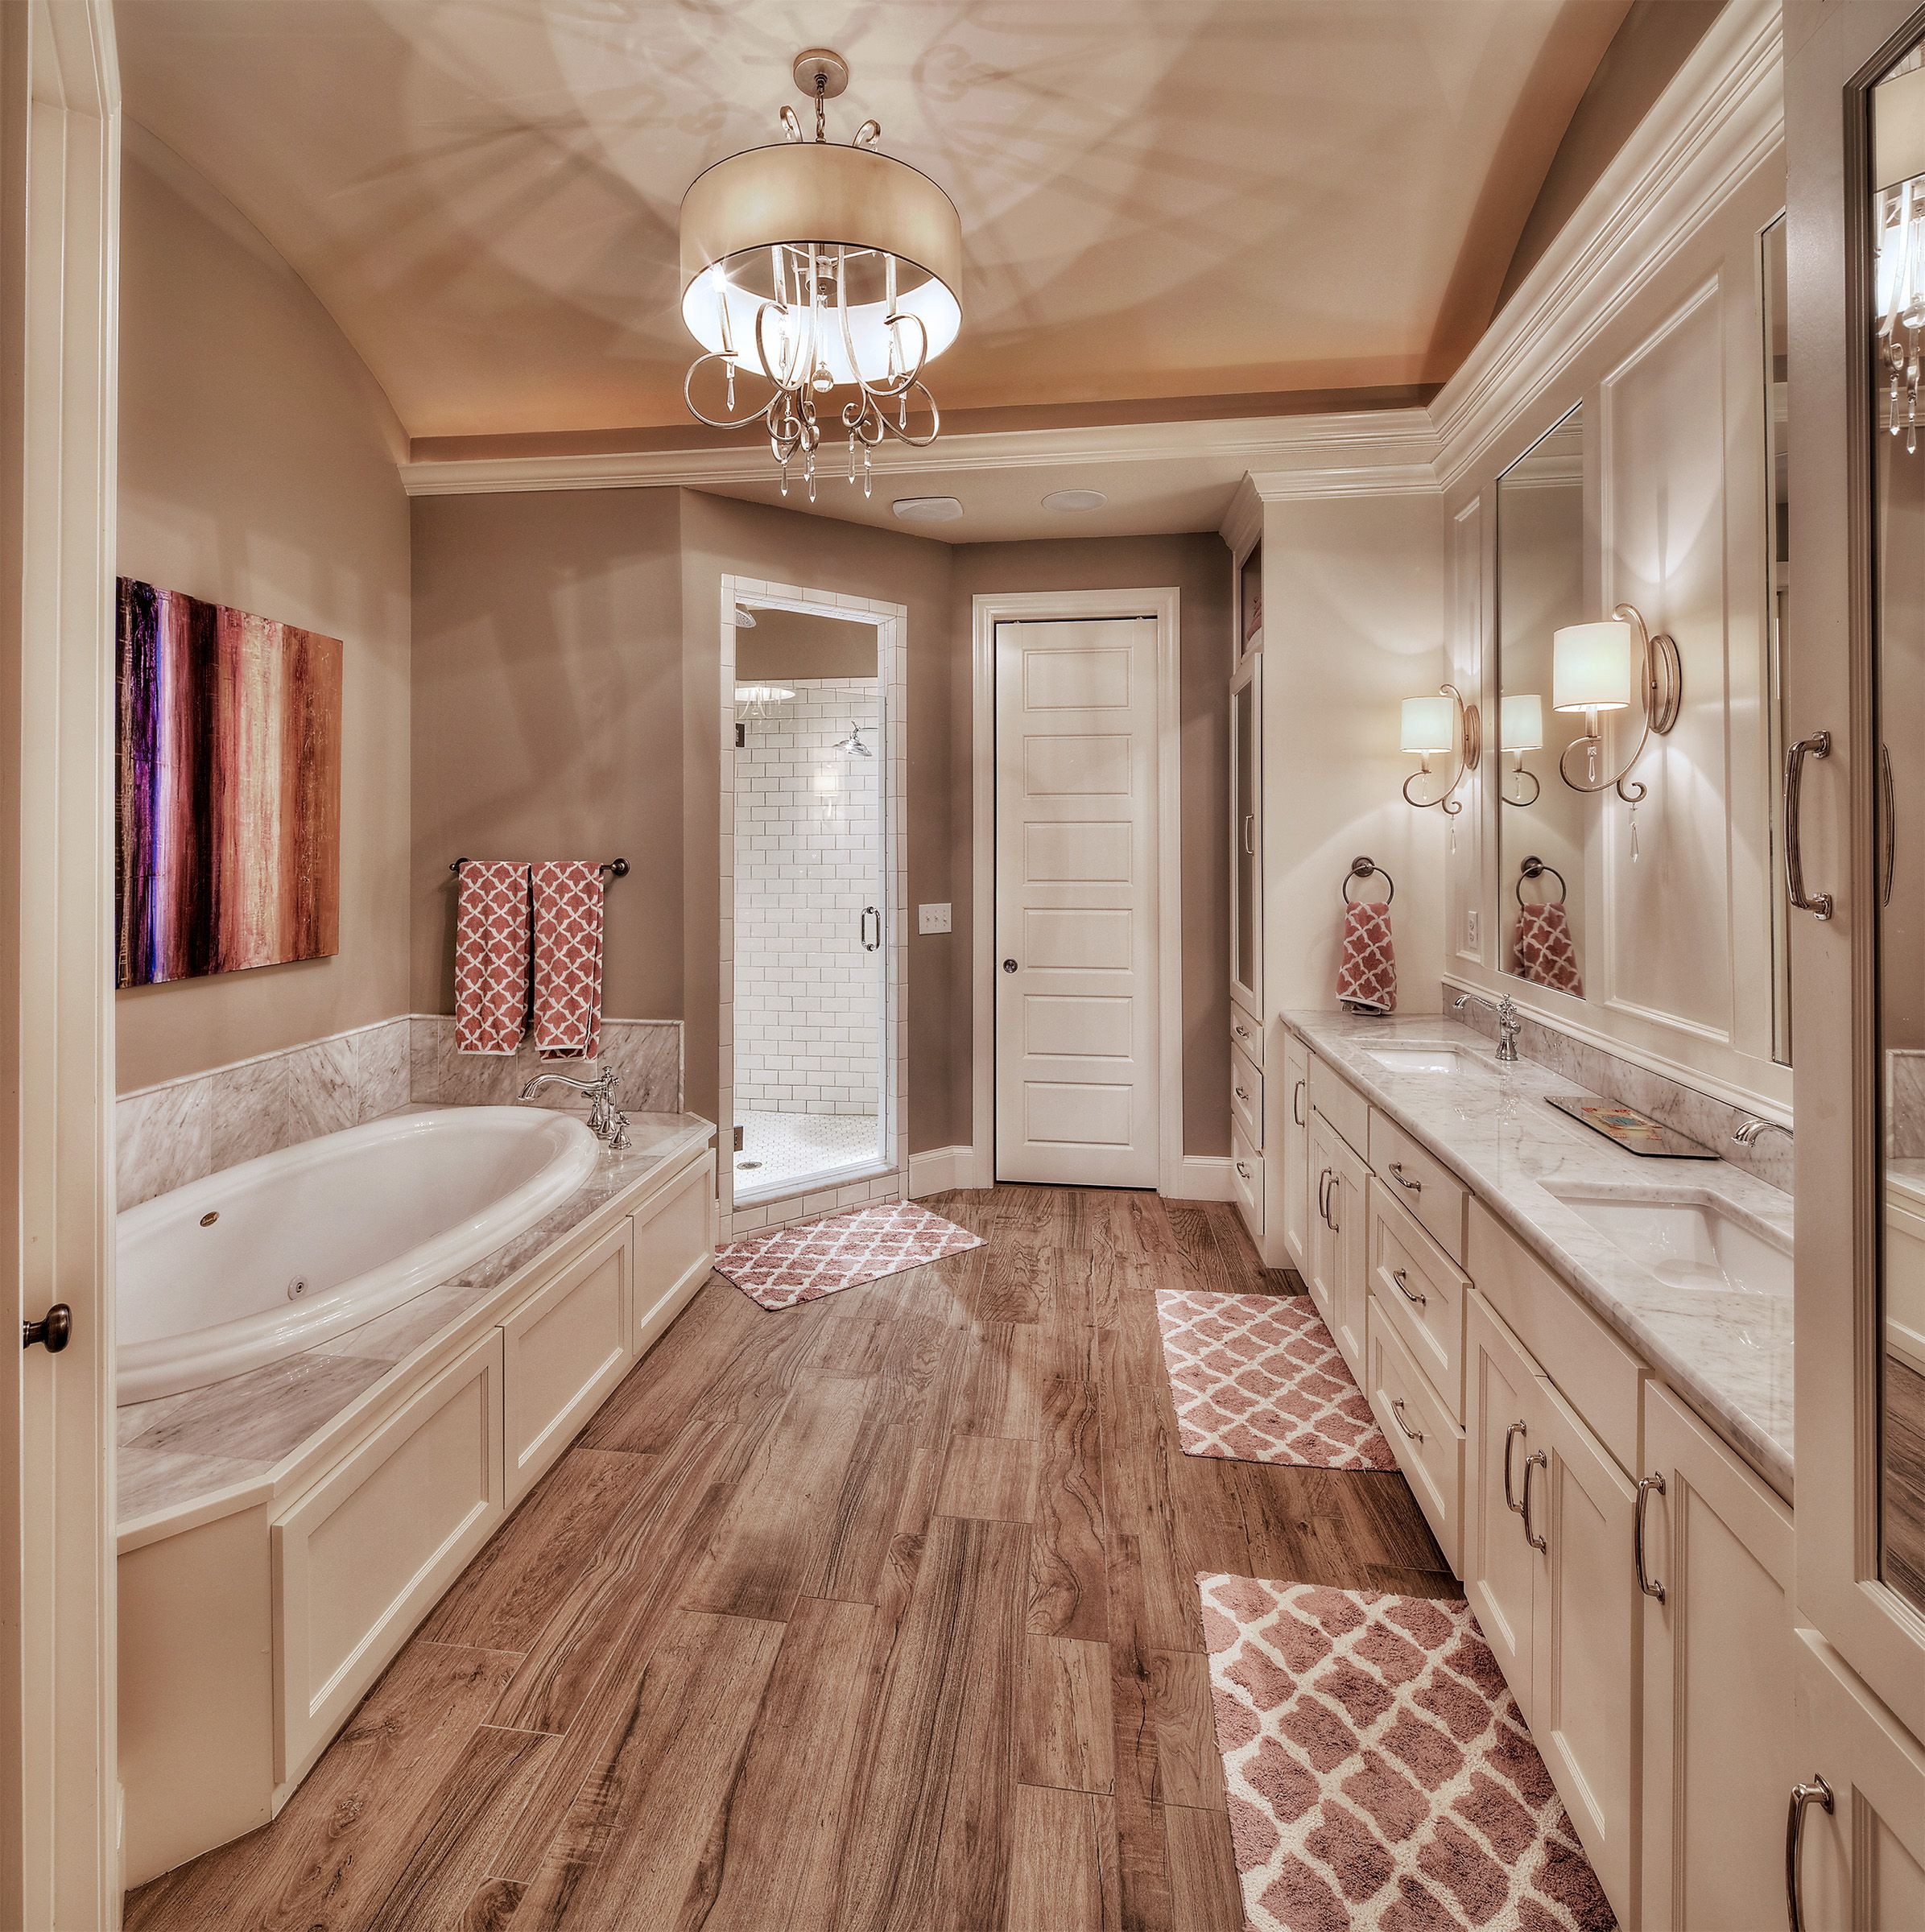 Large Master Bathroom
 Master bathroom hardwood floors large tub his and her